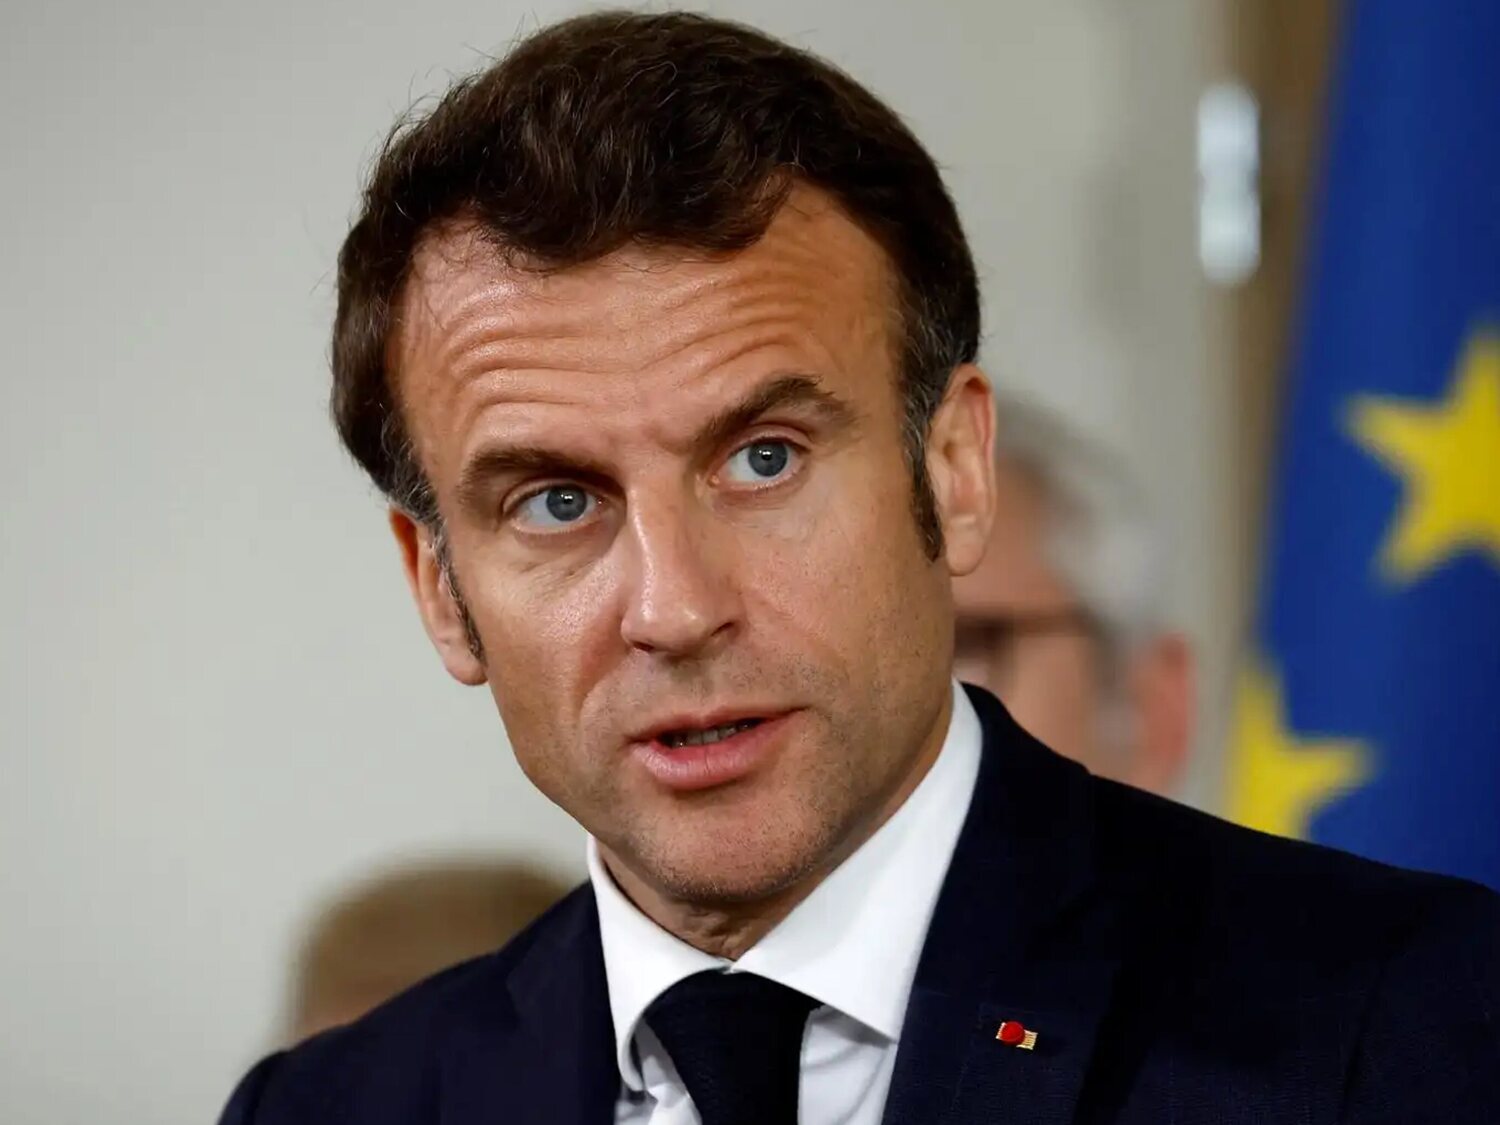 El sueldo de Emmanuel Macron, presidente de Francia y príncipe de Andorra